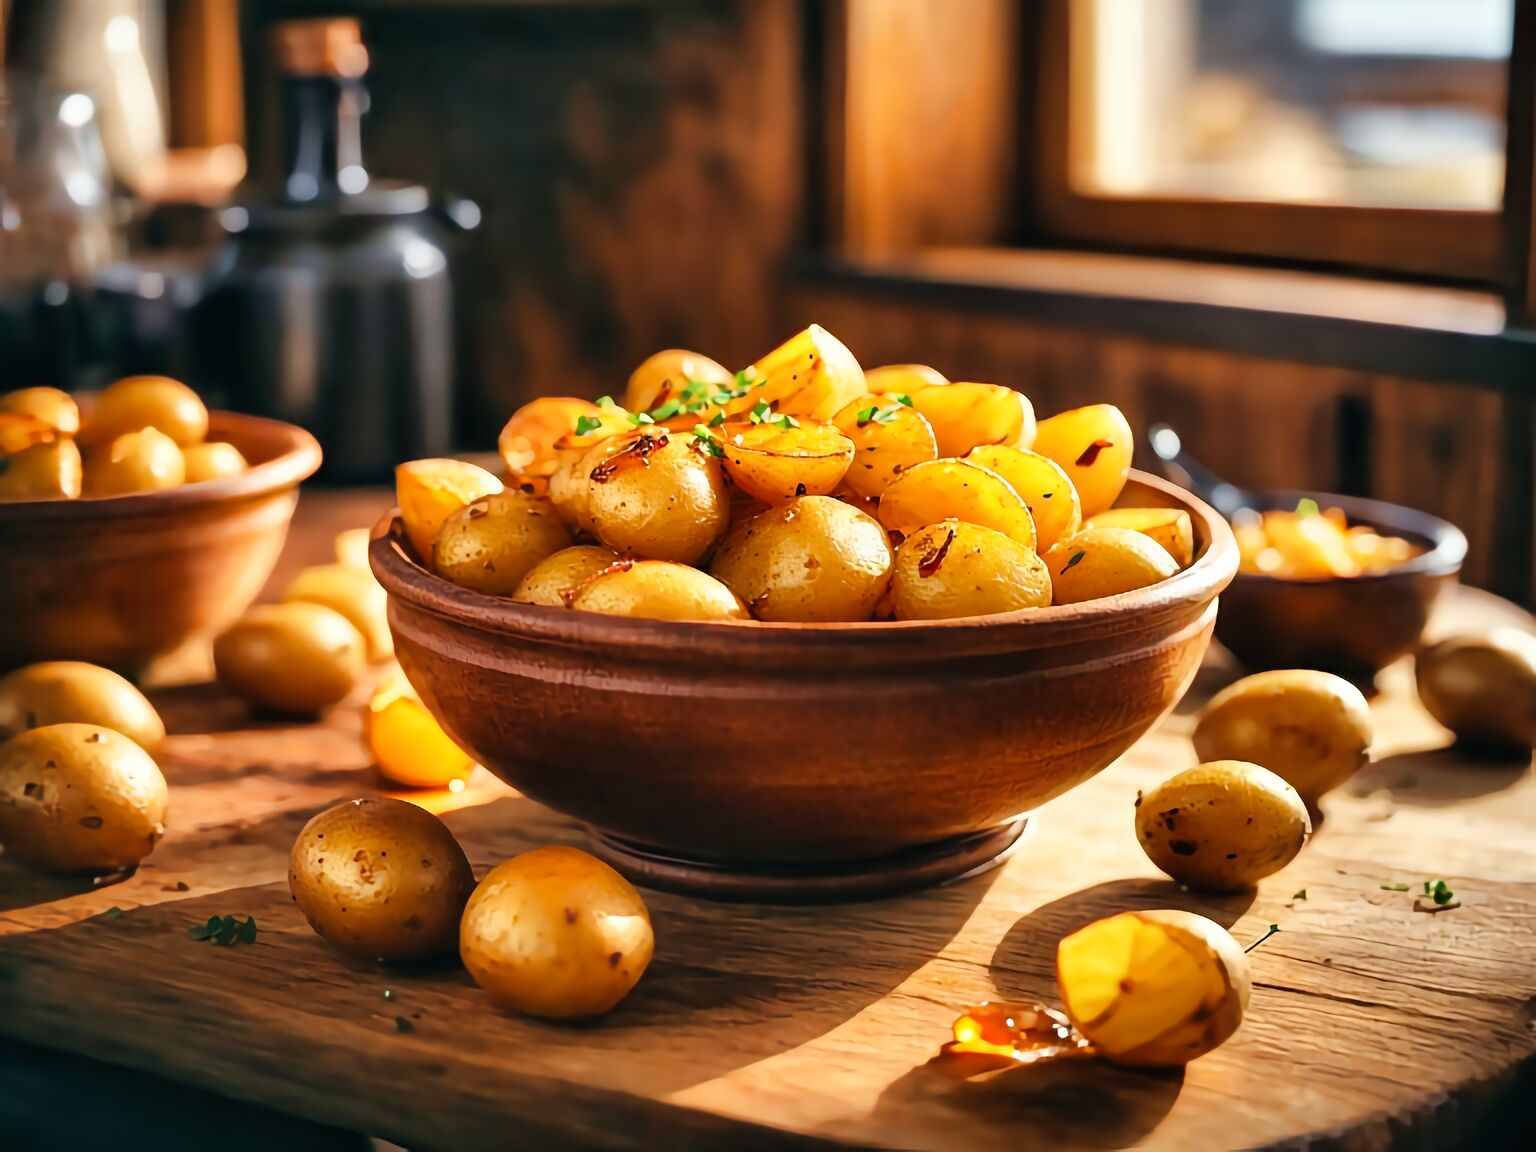 Icelandic Caramelized Potatoes Recipe